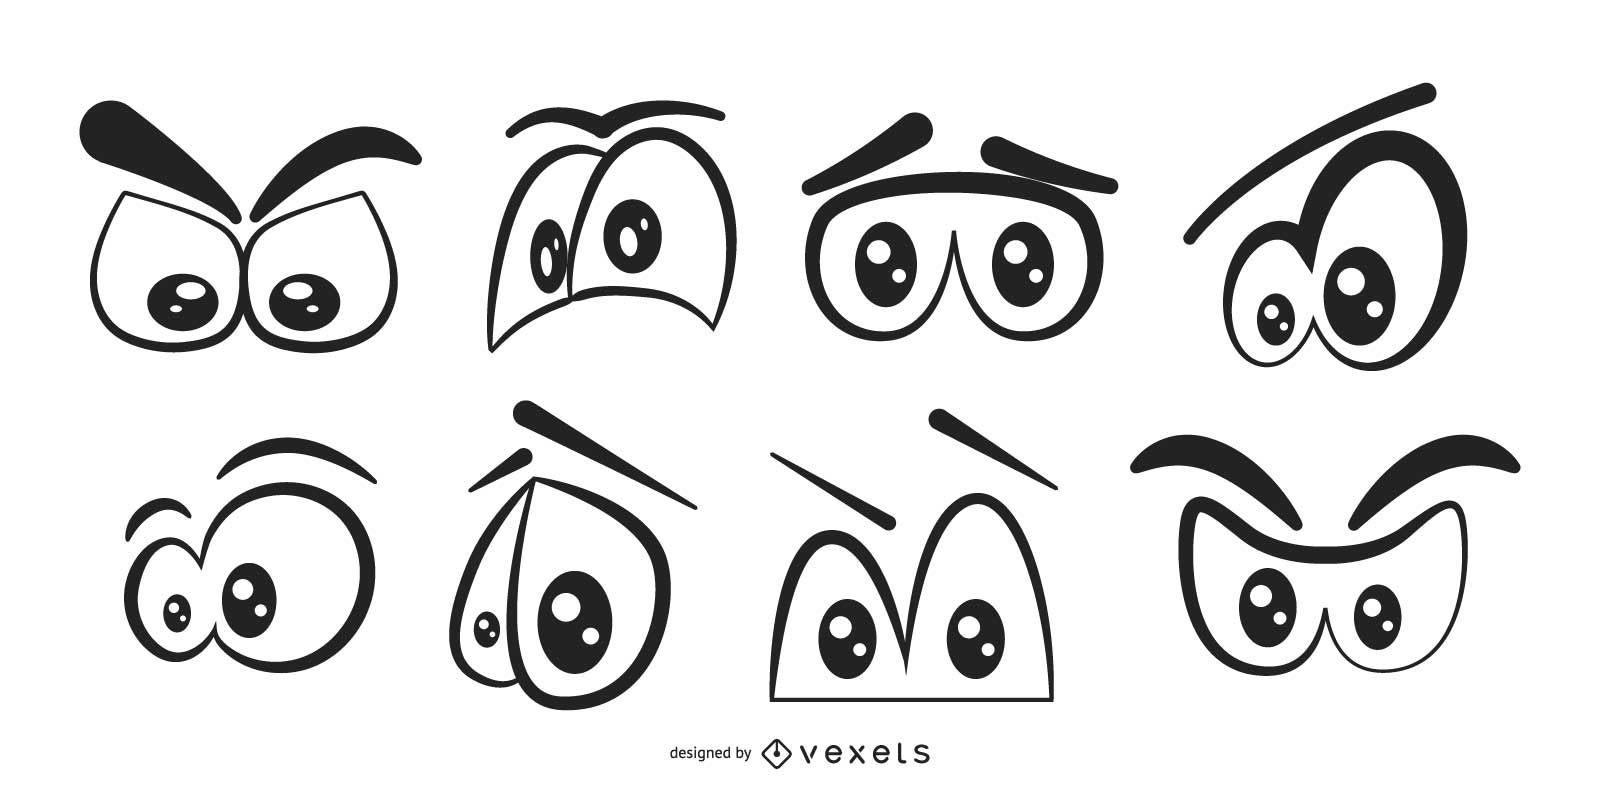 Vectores & Gráficos de ojos para descargar